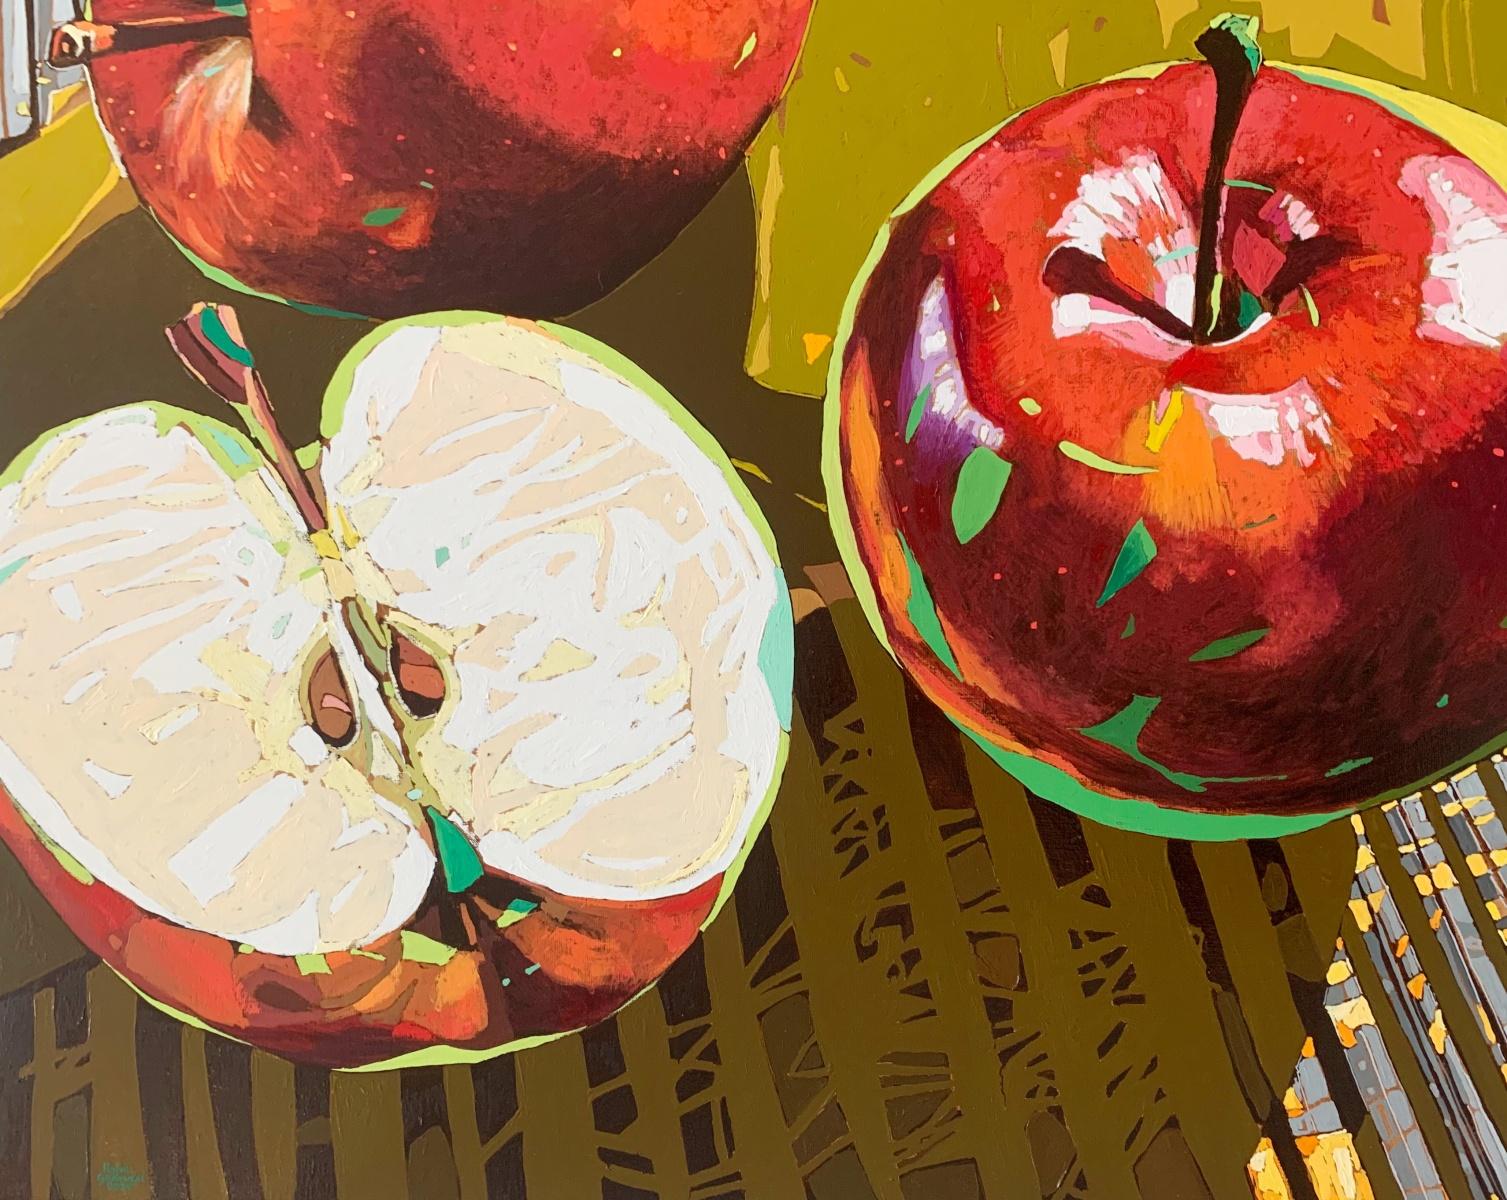 Zeitgenössisches figuratives Gemälde in Öl auf Leinwand des polnischen Künstlers Rafal Gadowski. Gemälde im Pop-Art-Stil, das Äpfel darstellt. Die Farben sind gesättigt und leuchtend. Der Titel dieses Gemäldes lautet 